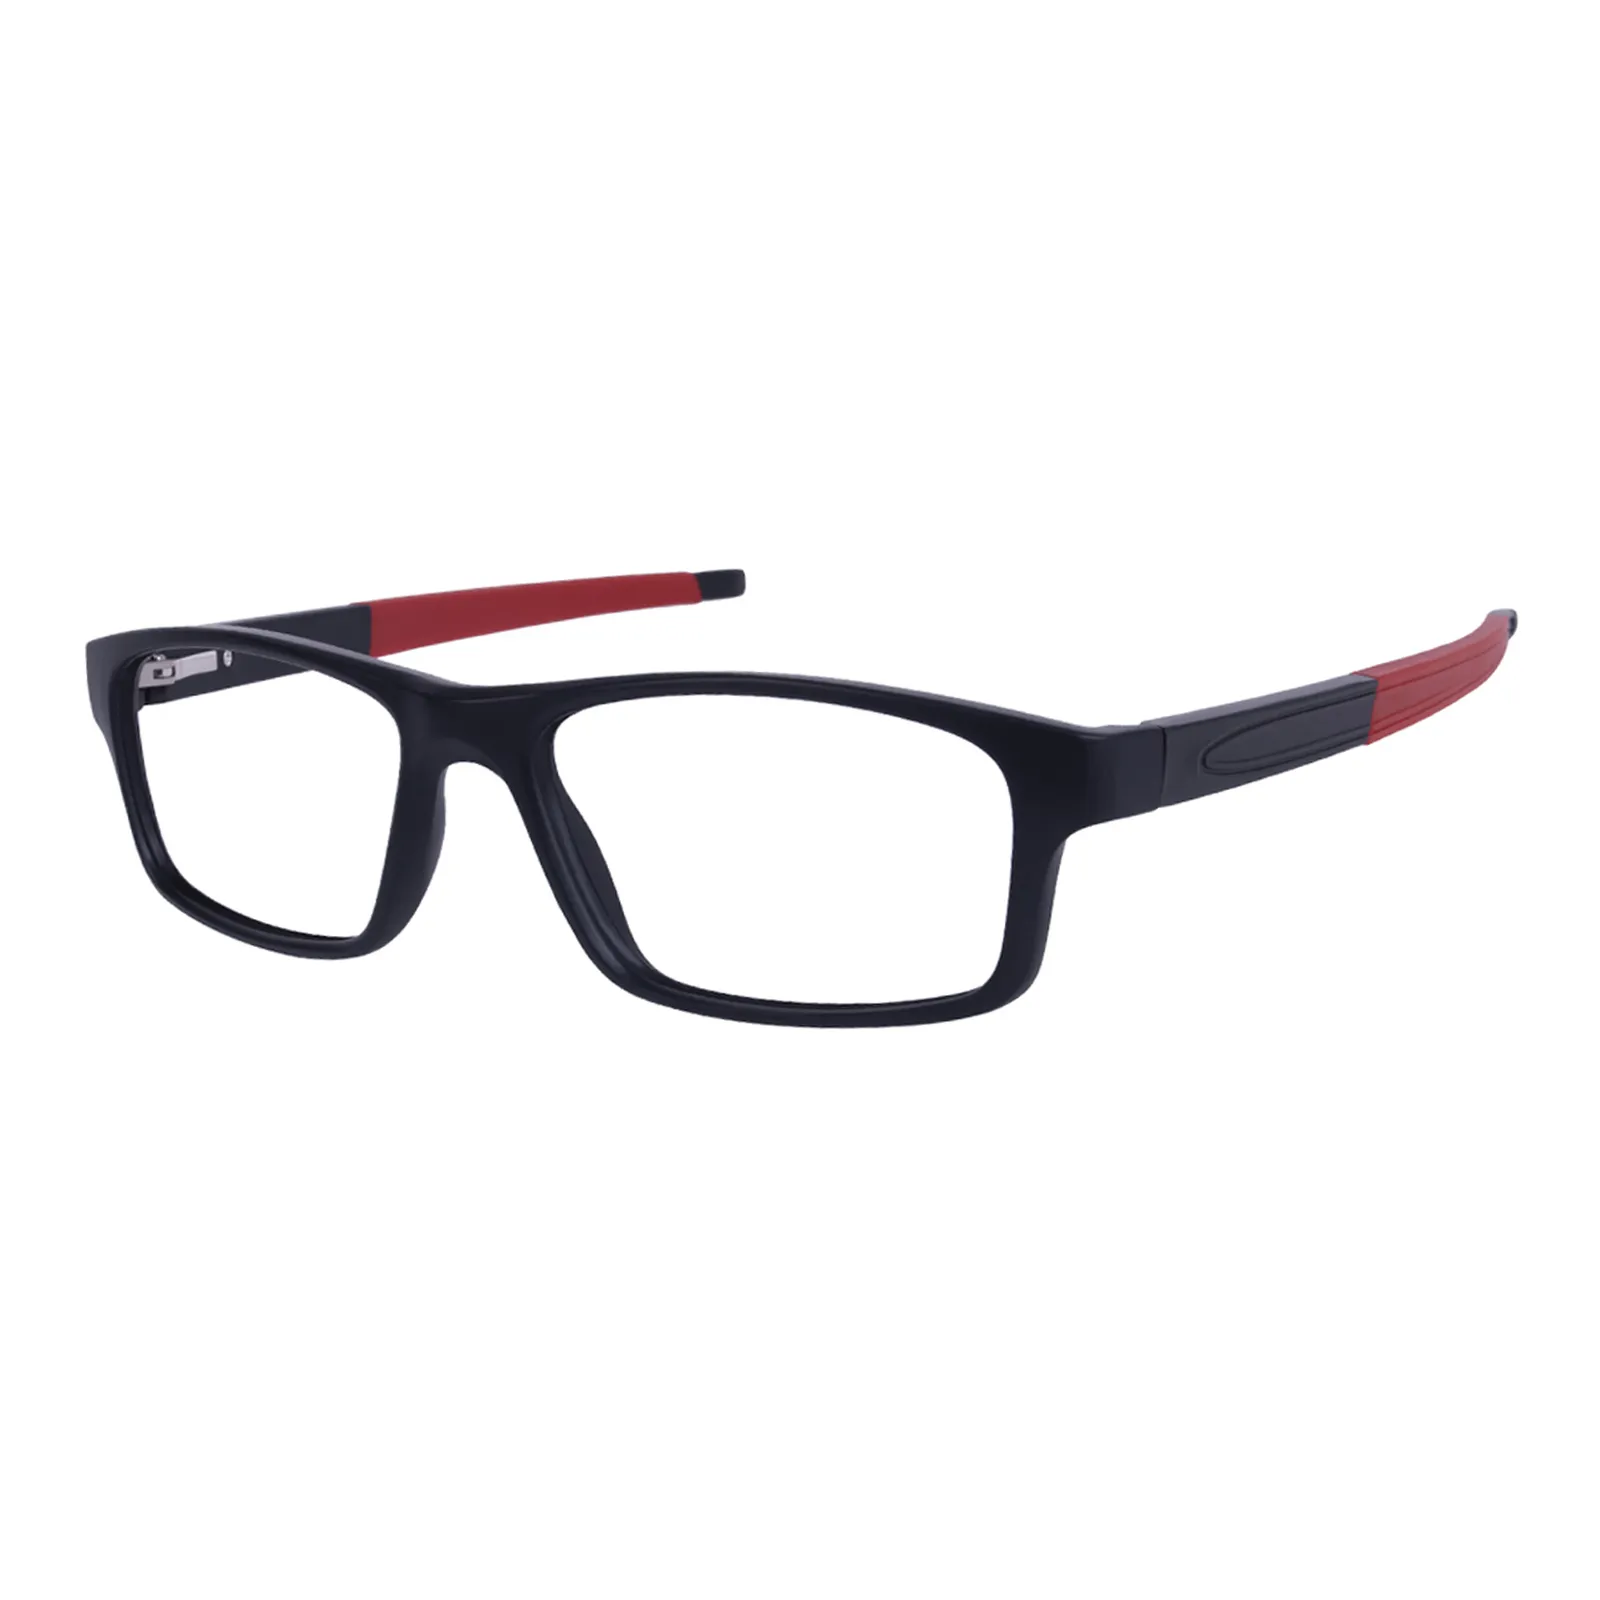 Whitney - Rectangle Black/Red Glasses for Men & Women